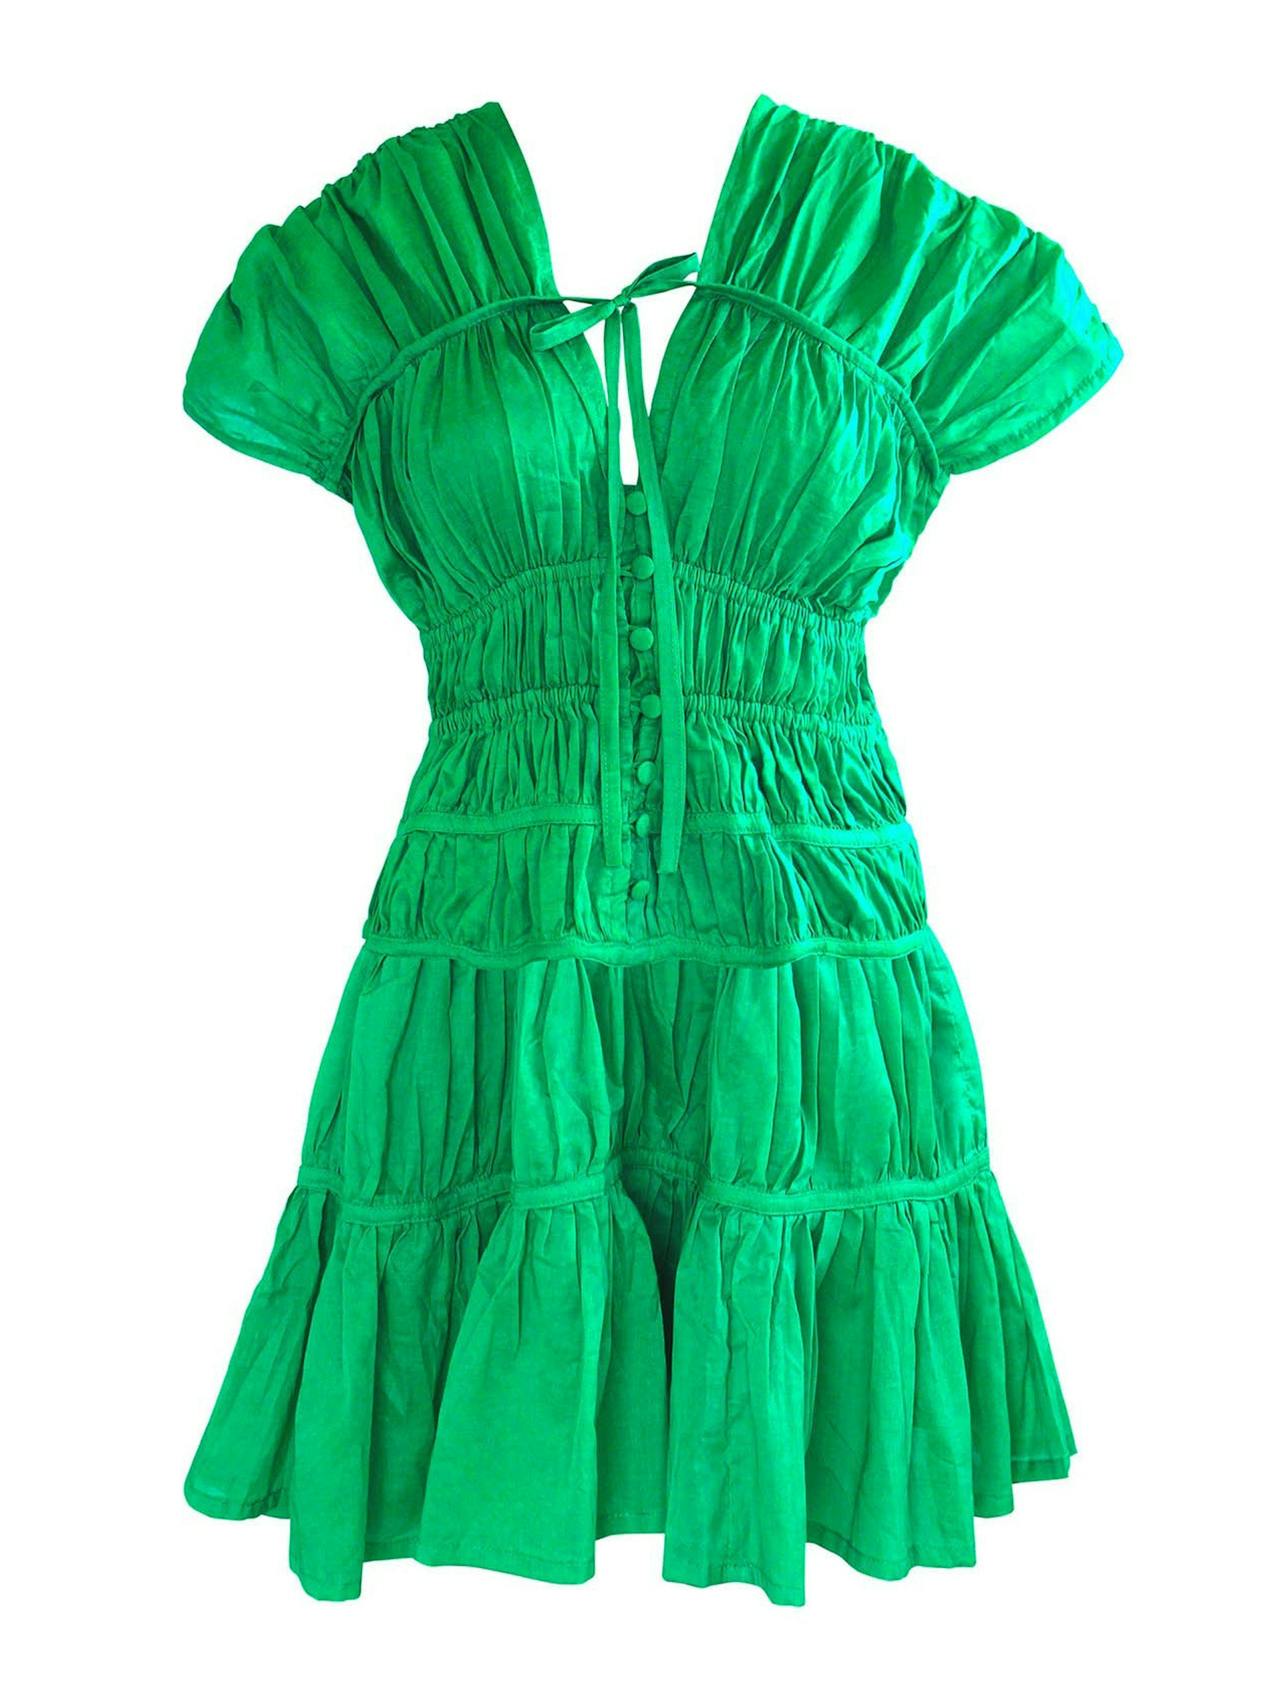 Srikandi ruffle cotton dress in kelly green